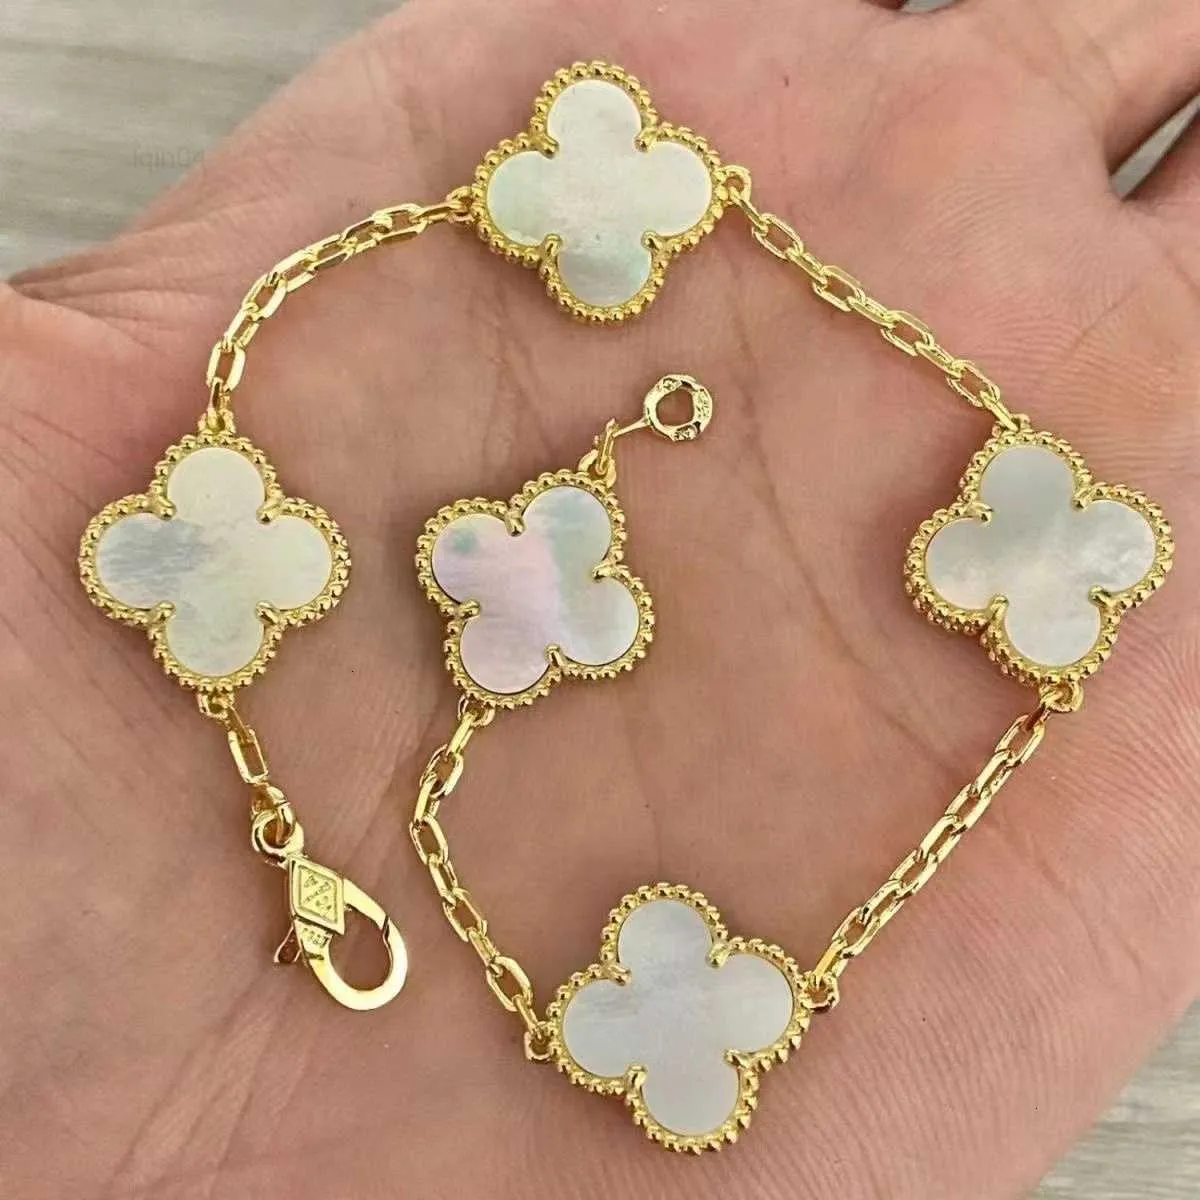 Luxury Designer Link Chain Bracelet Four-leaf Cleef Clover Womens Fashion 18k Gold Bracelets Jewelry U6 16xw9 12 ZWJB